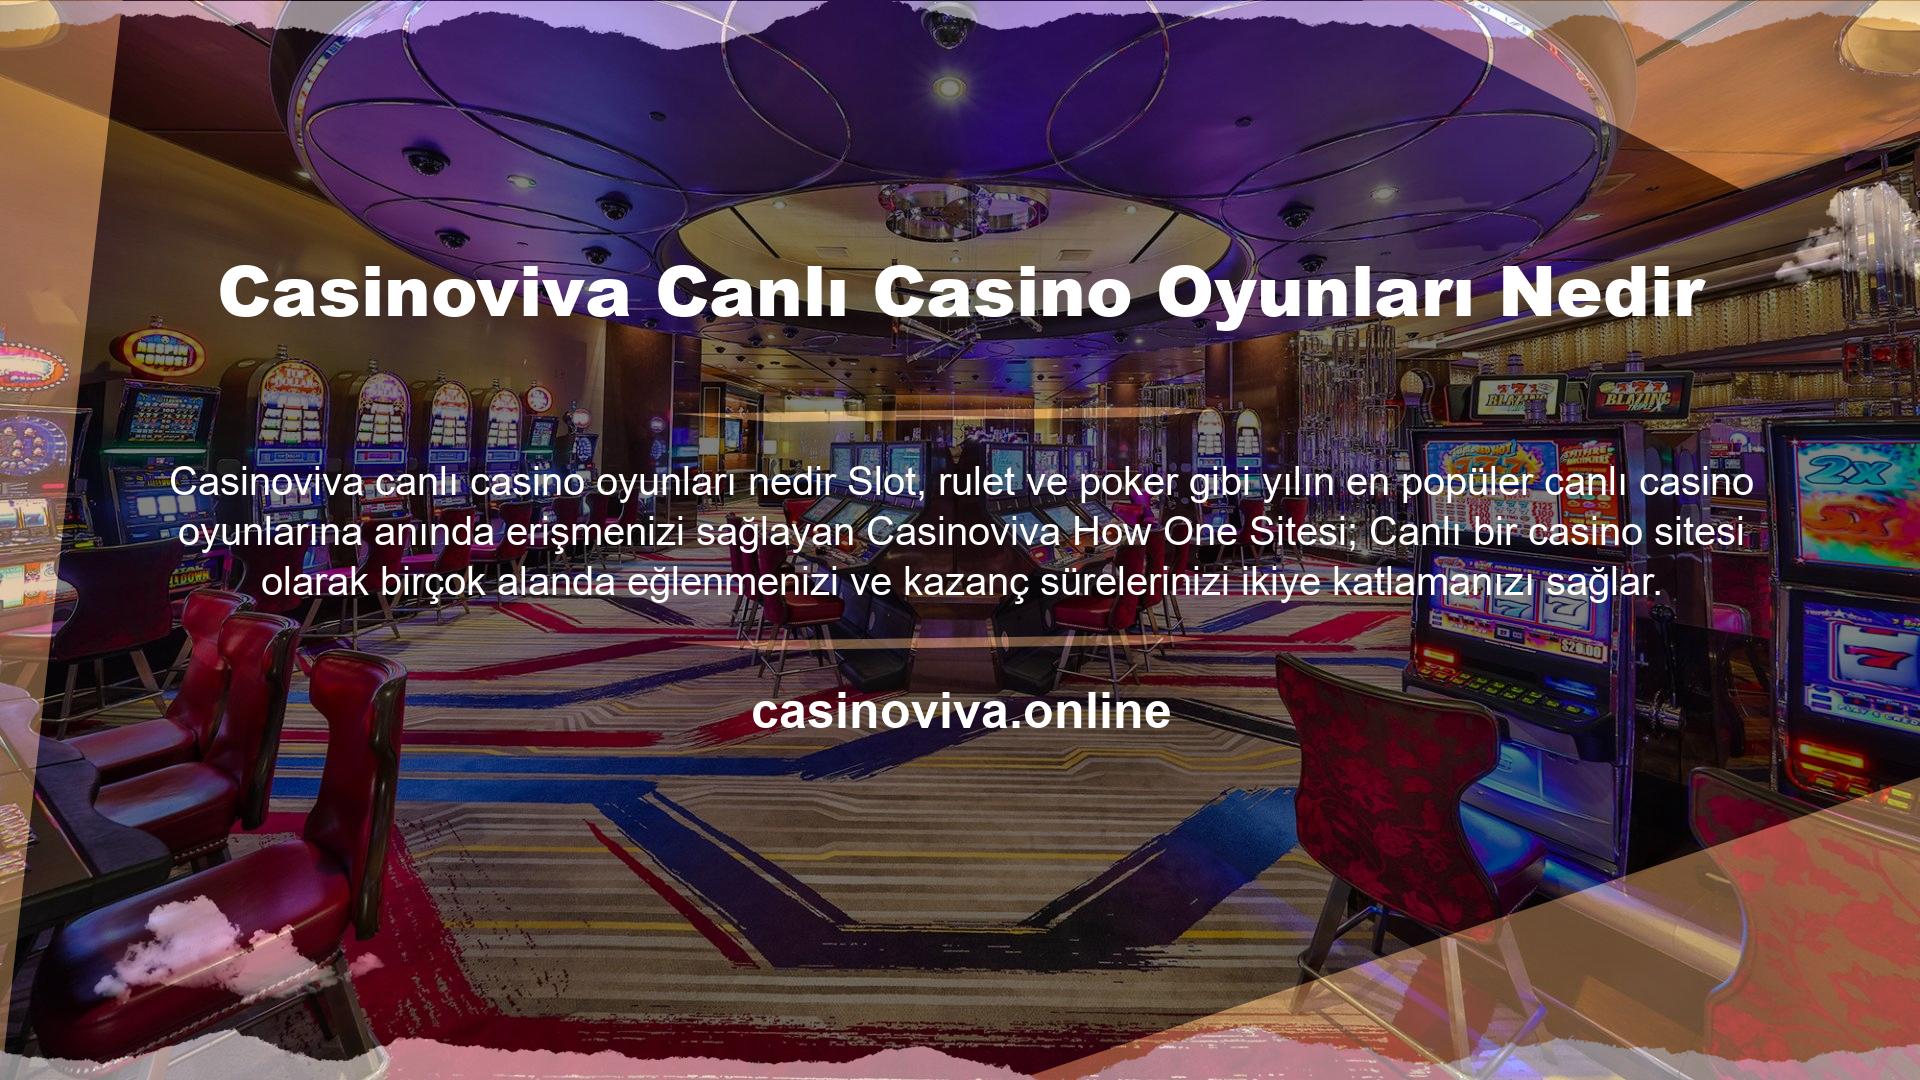 Casinoviva Canlı Casino Oyunları Nedir